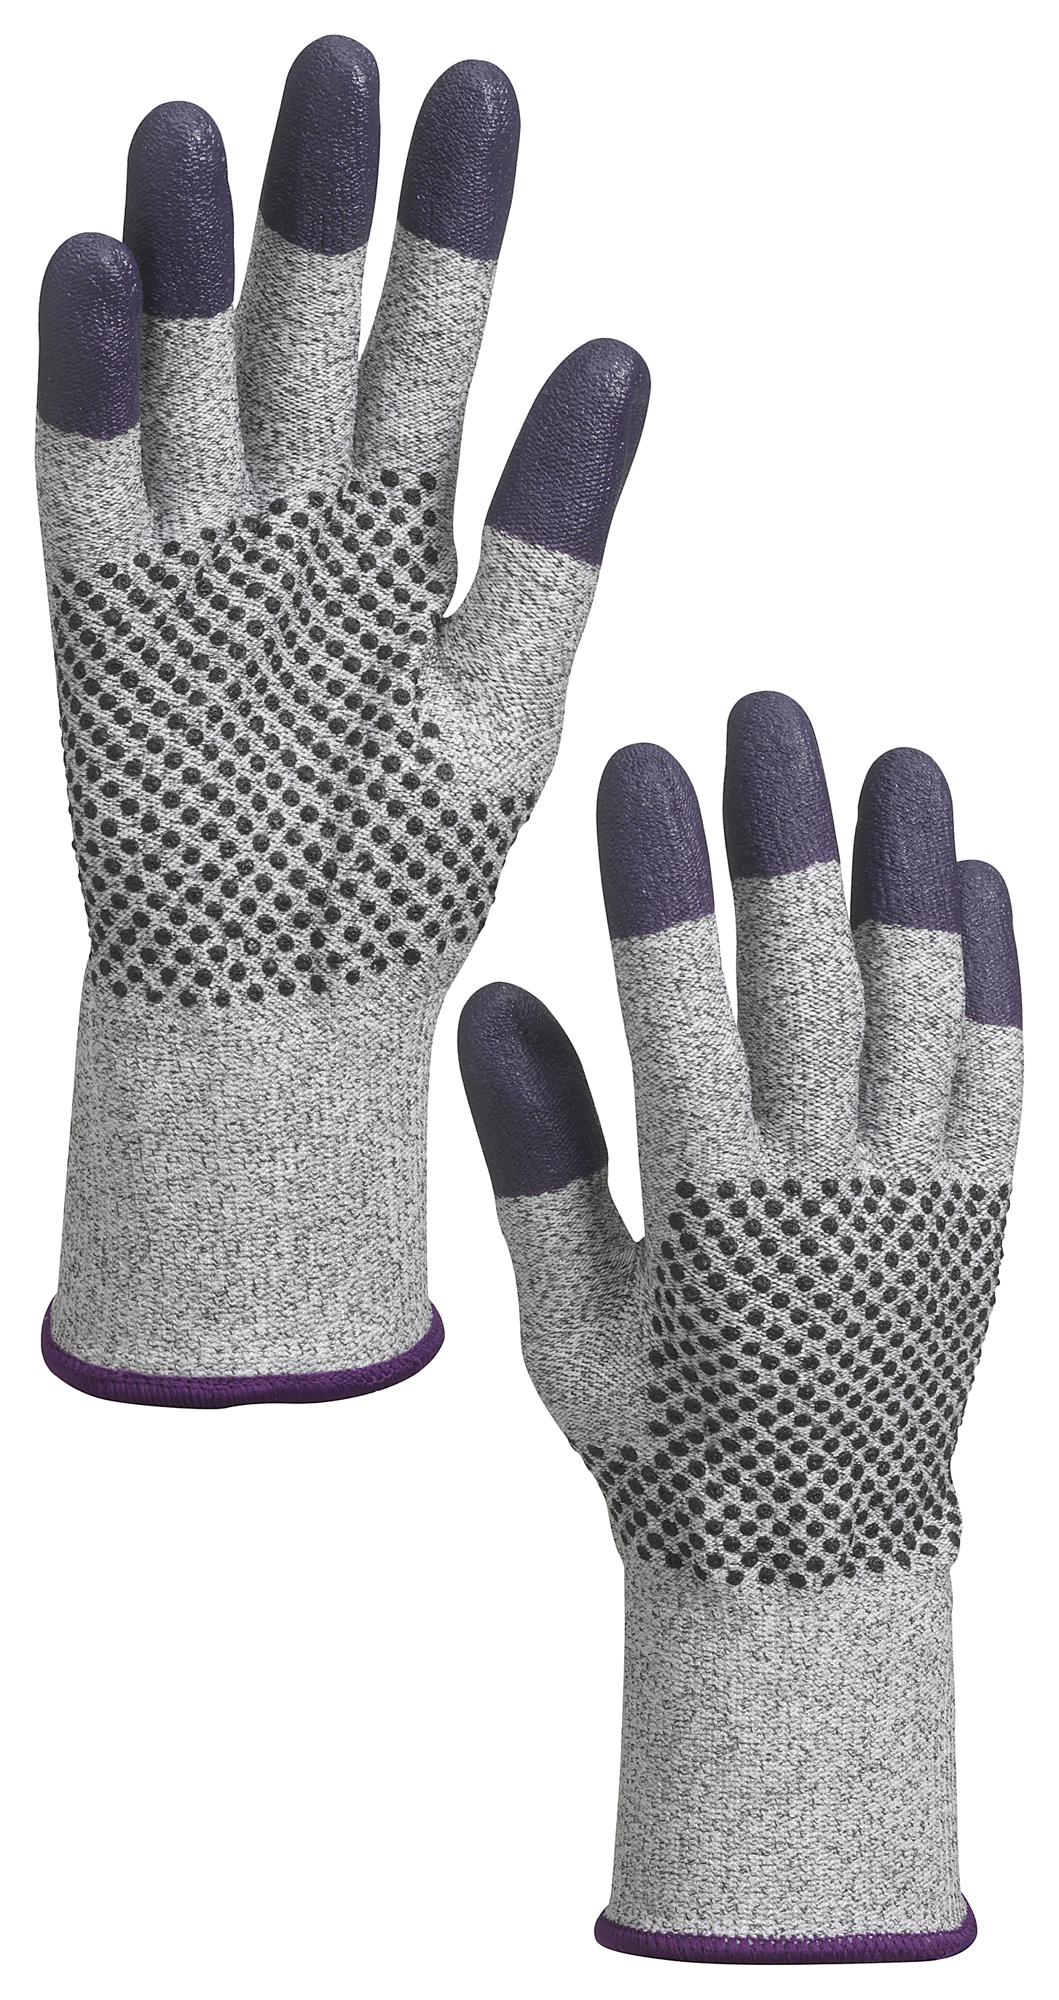 Kleenguard 97434 Glove, Knit Wrist, 2Xl, Blk/grey/purple